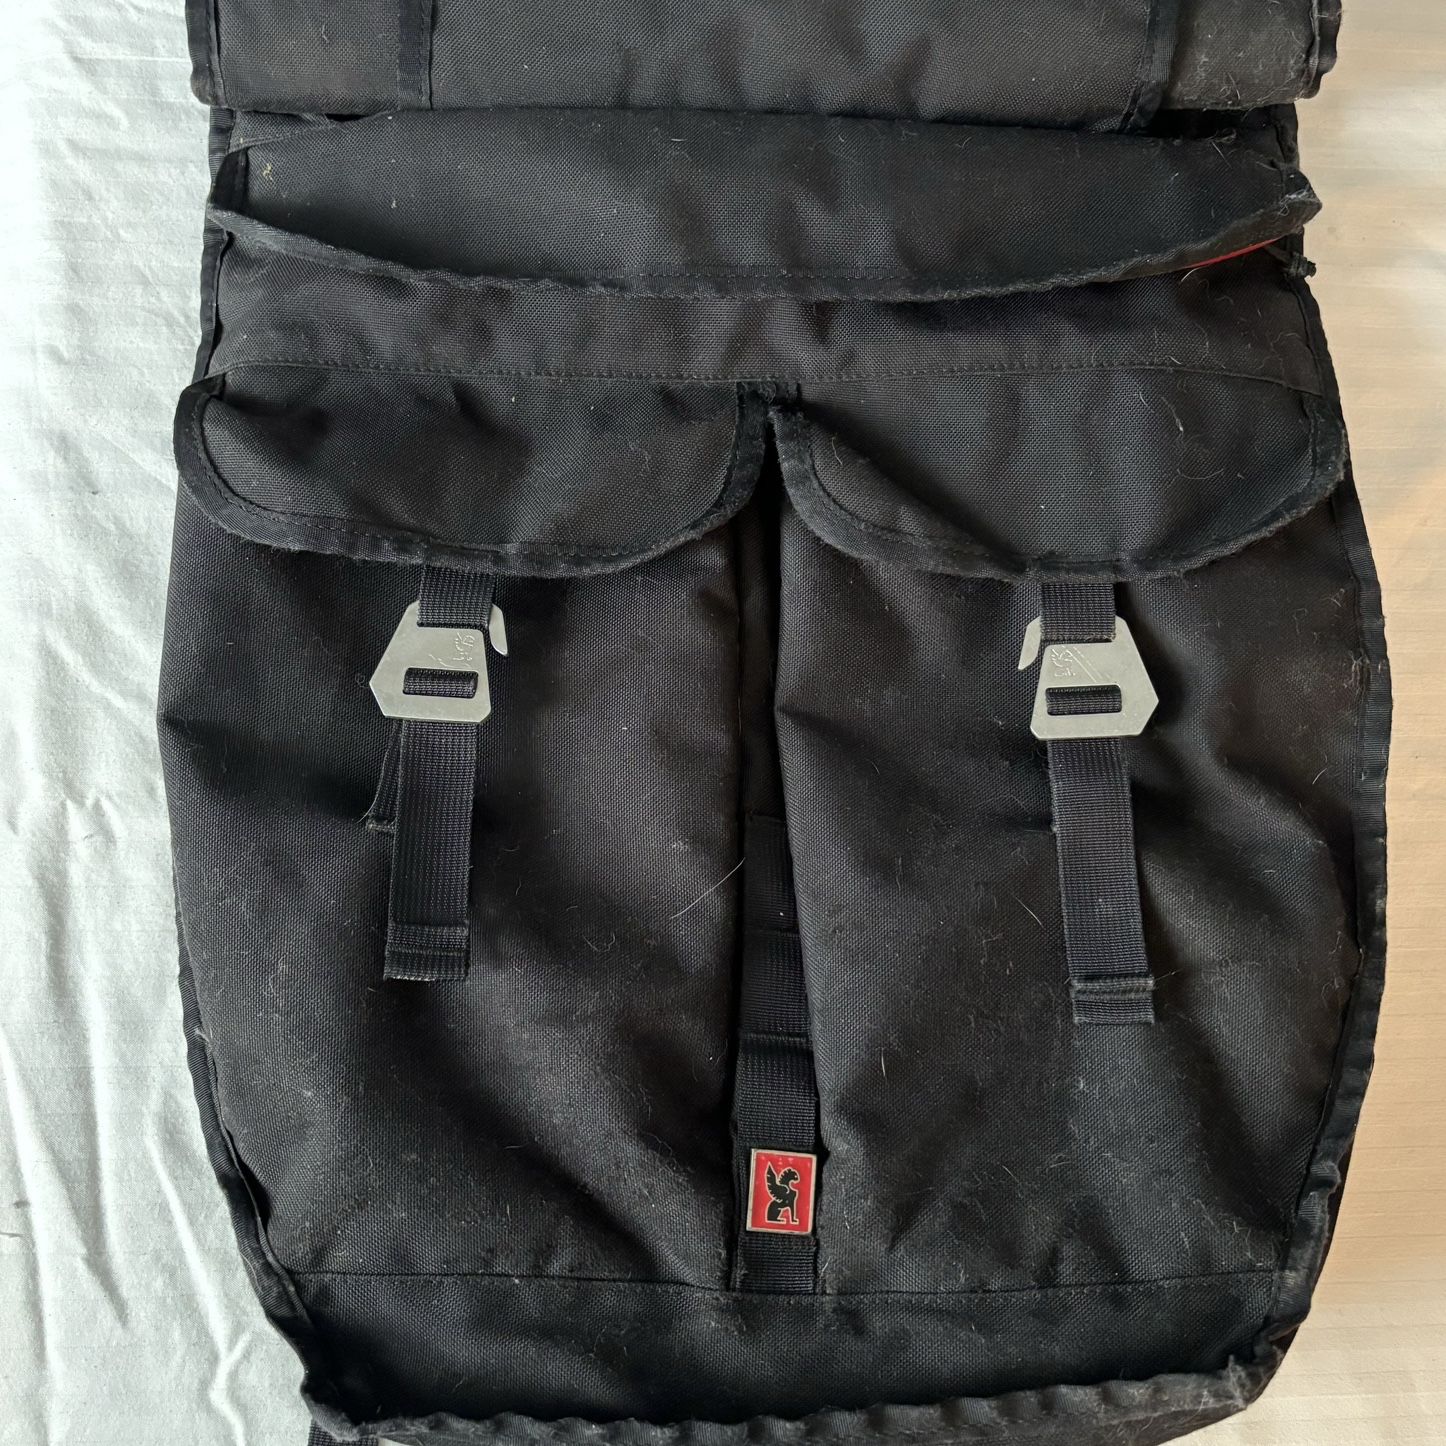  Chrome Ivan waterproof Messenger backpack HUGE 